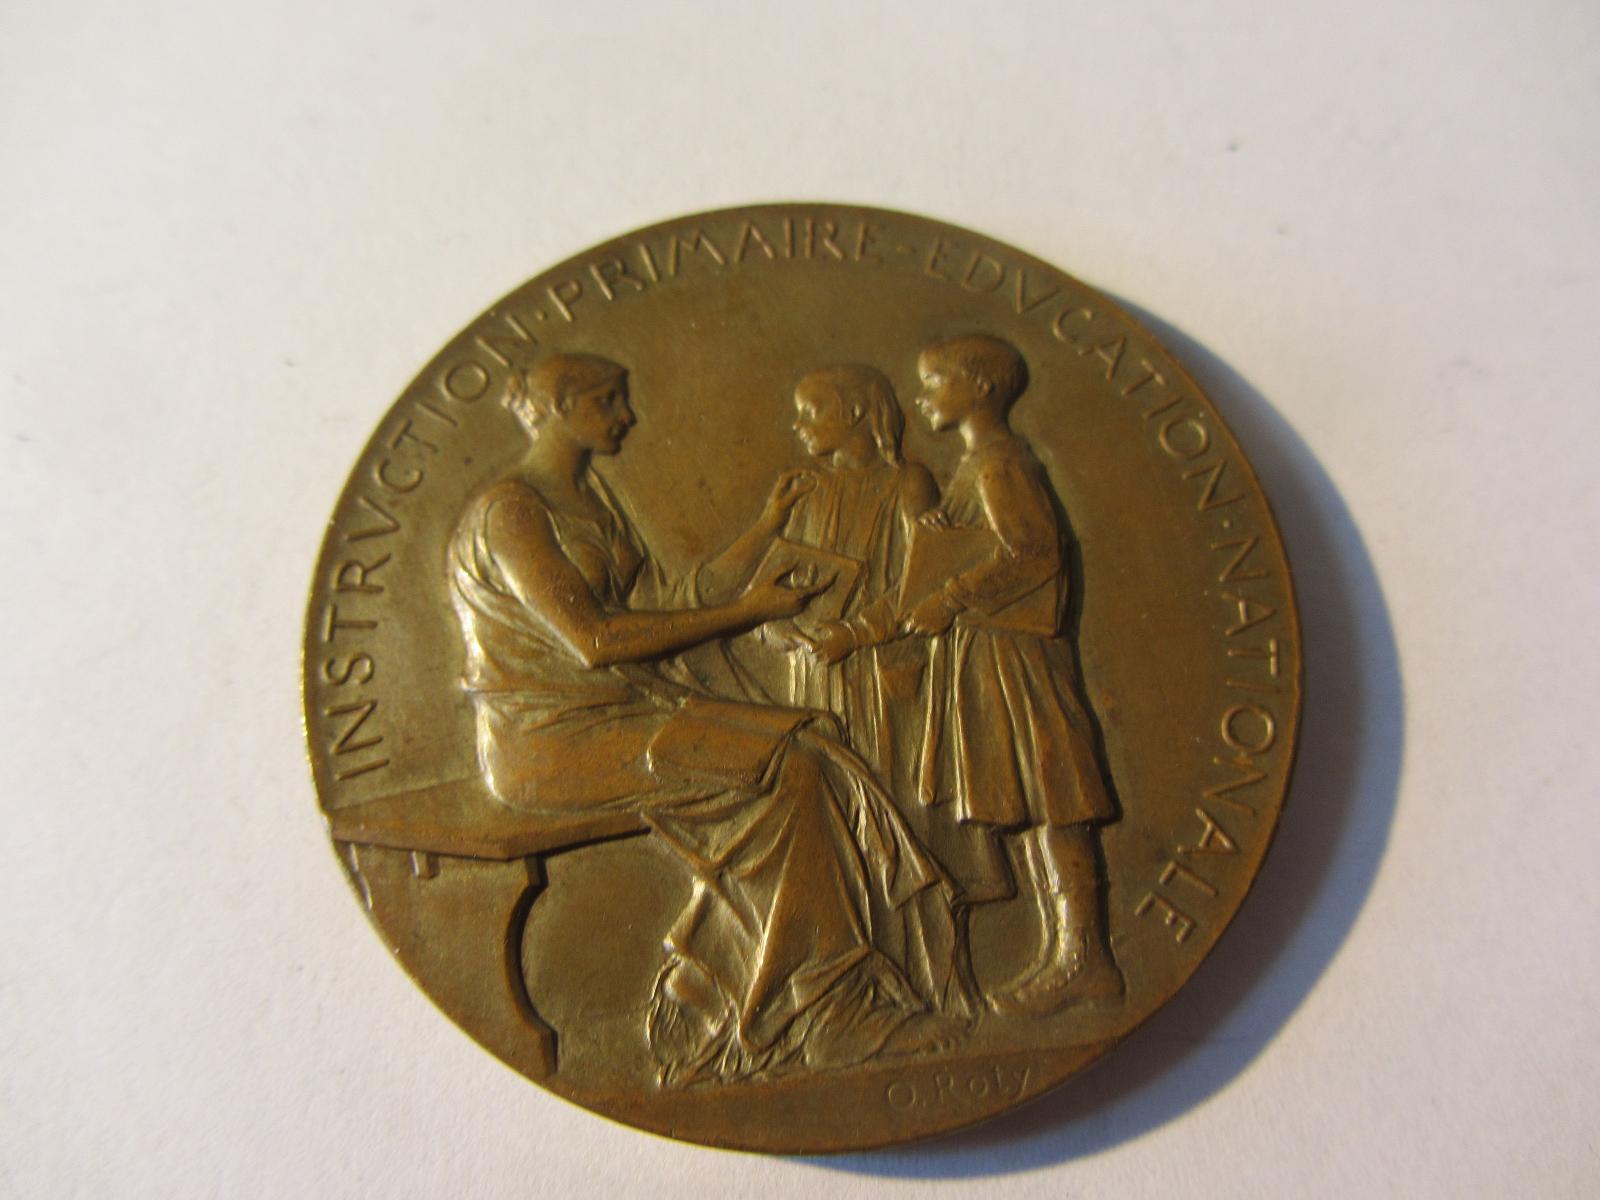 Francie Medaile Ministerstvo veřejného vyučování, Pierre Albert 1893 - Numizmatika